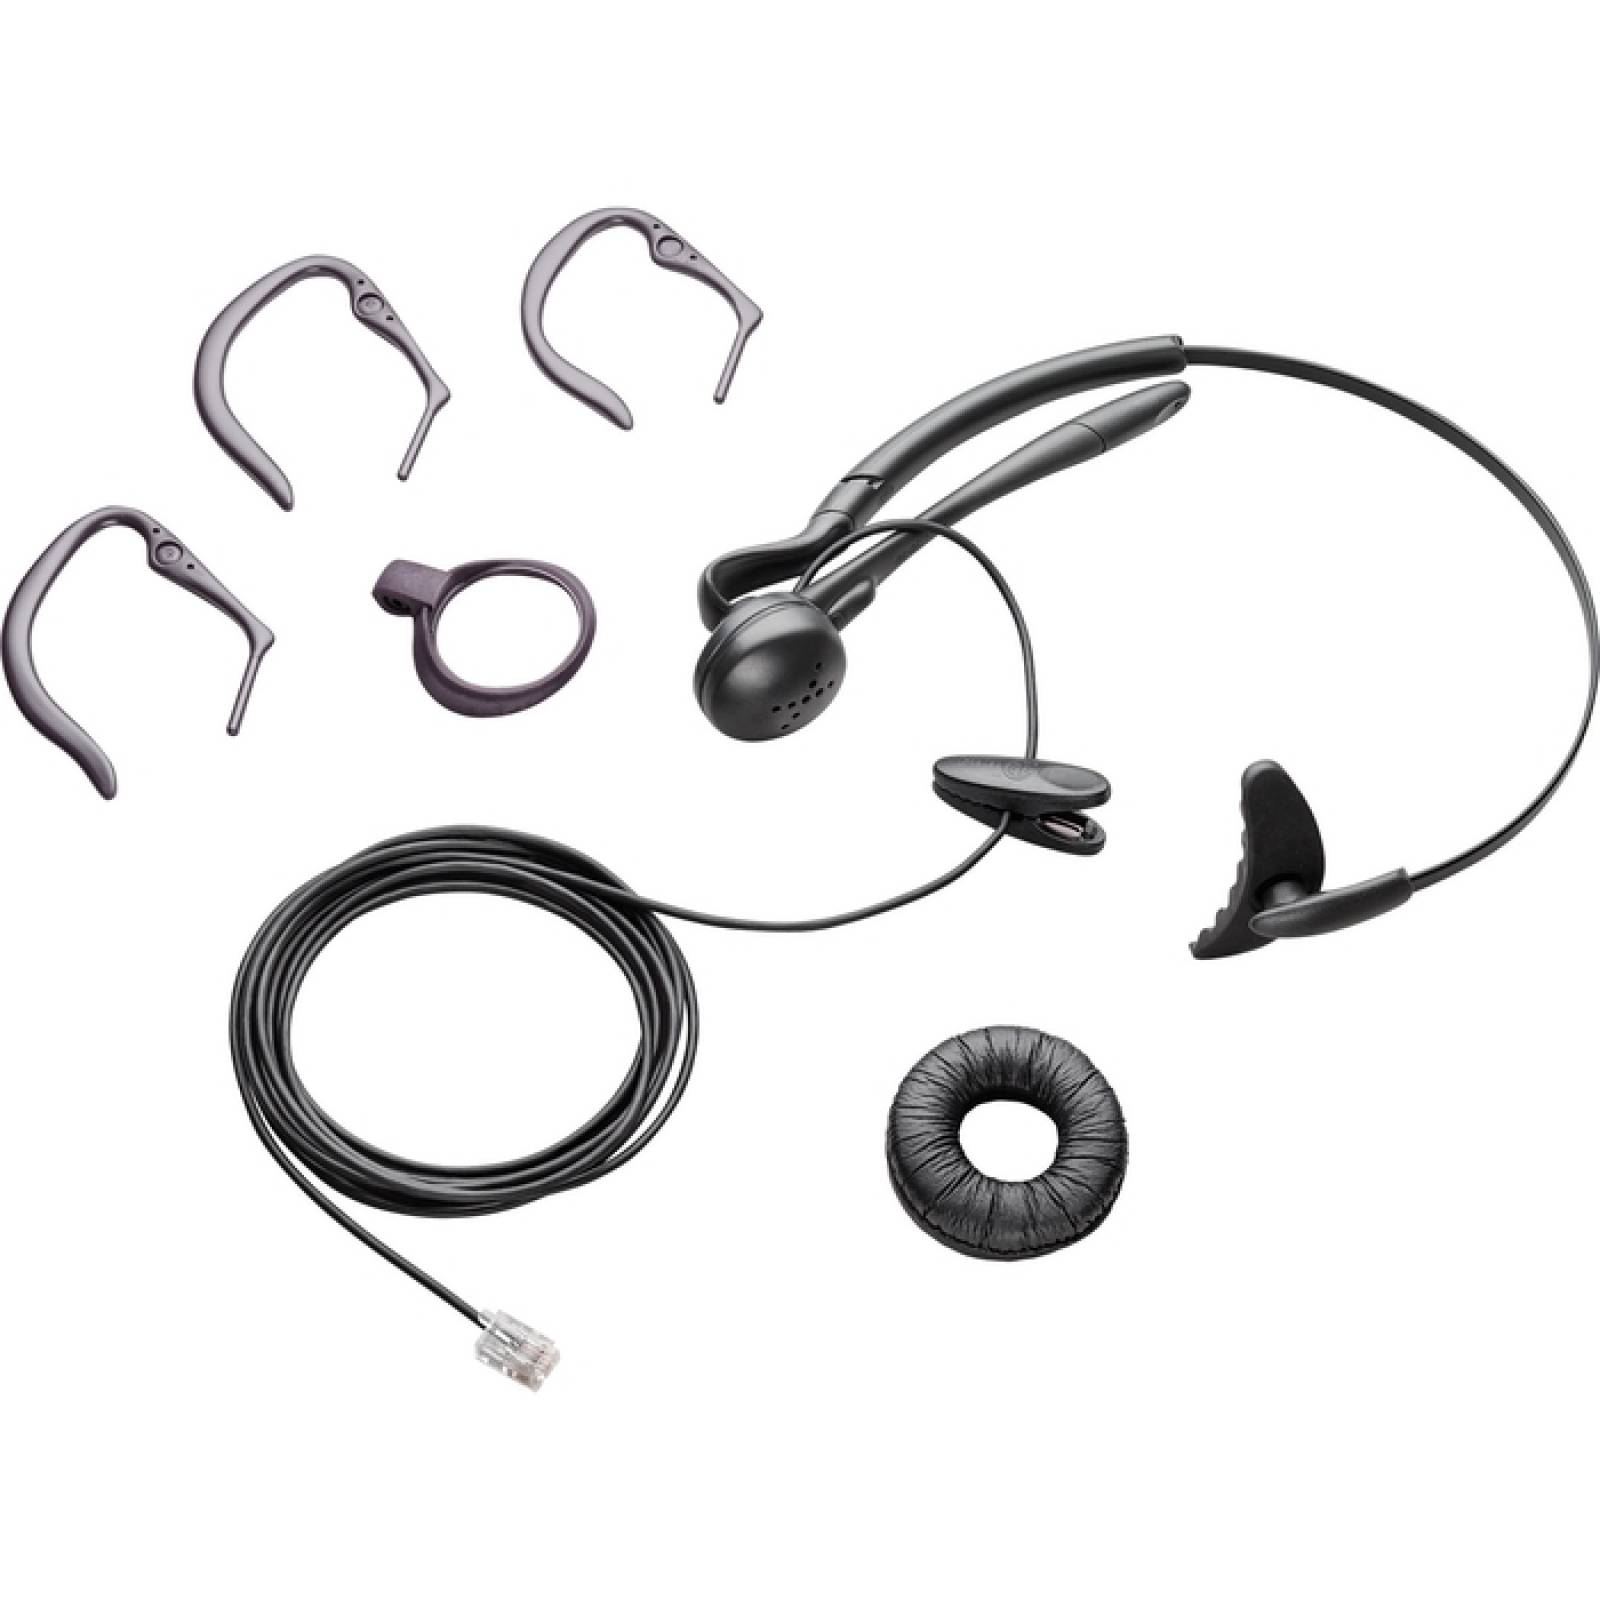 Reemplazo de los auriculares Plantronics para S10 T10 y T20